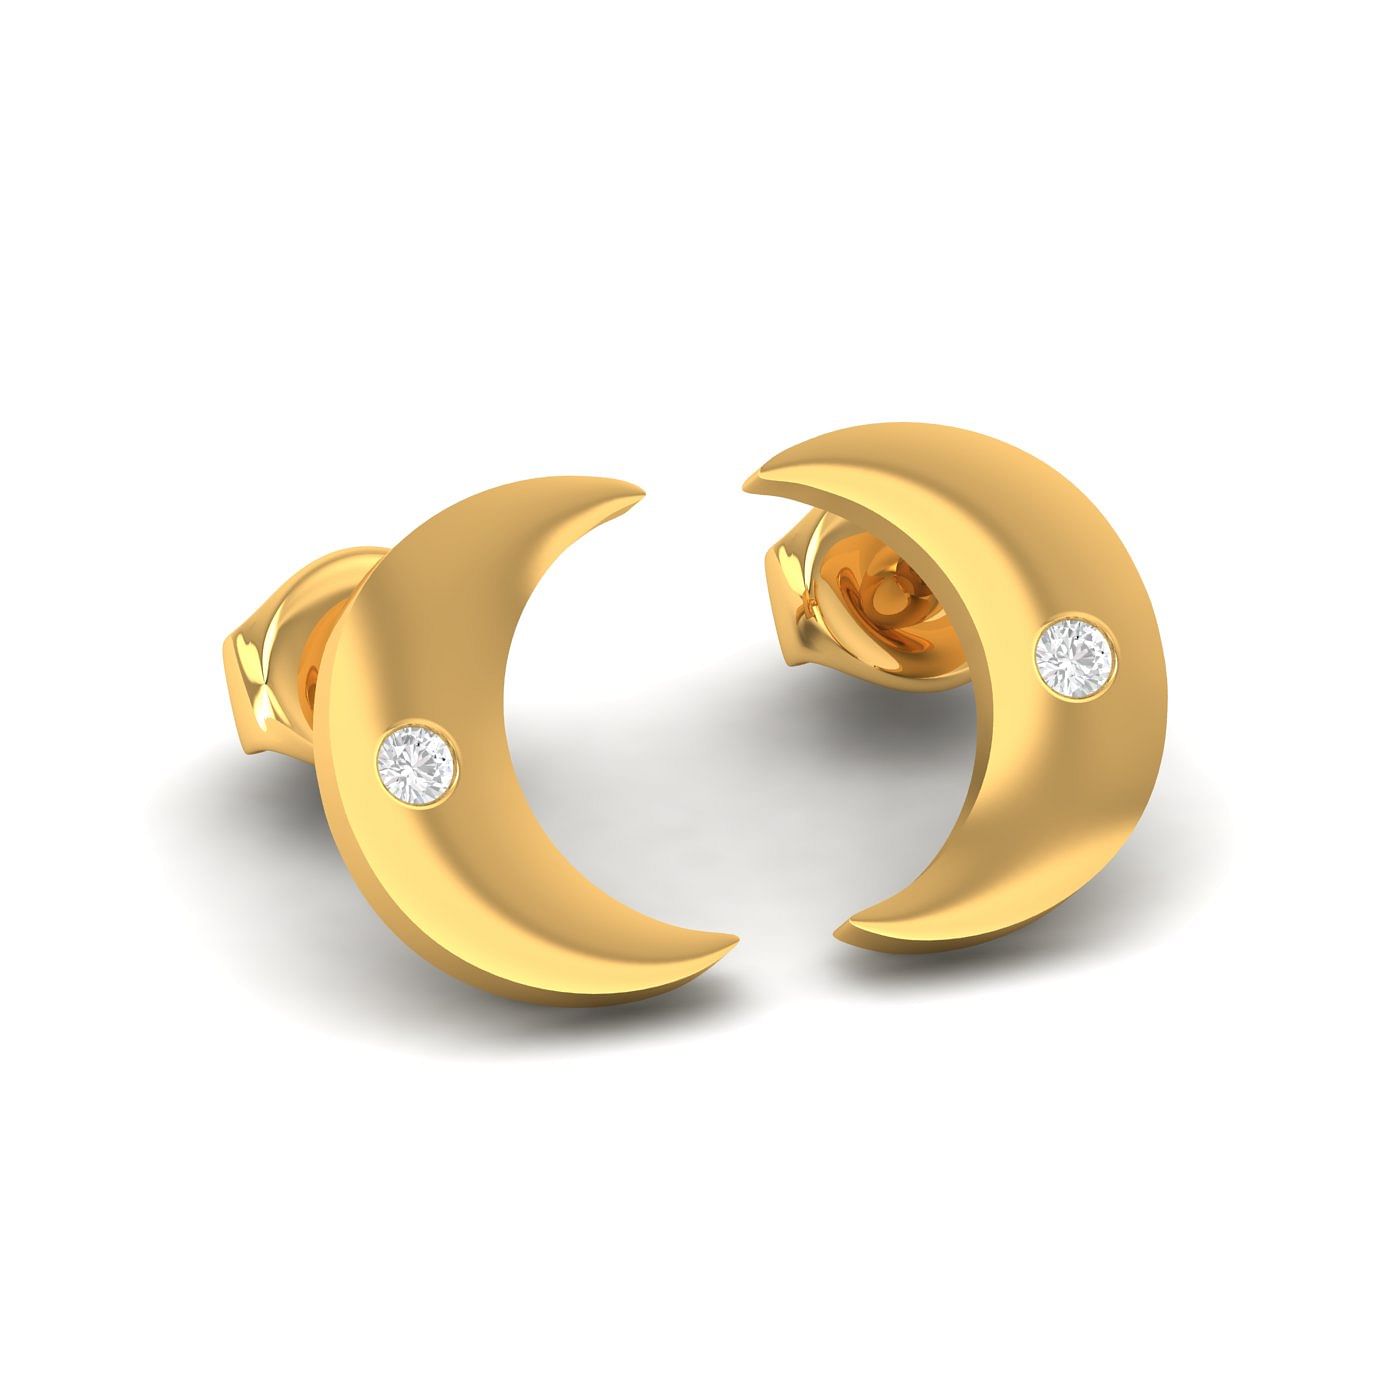 Half moon-cut Diamond Dangle Earrings | Marisa Perry Light Drop Earrings -  Earrings Jewelry Collections